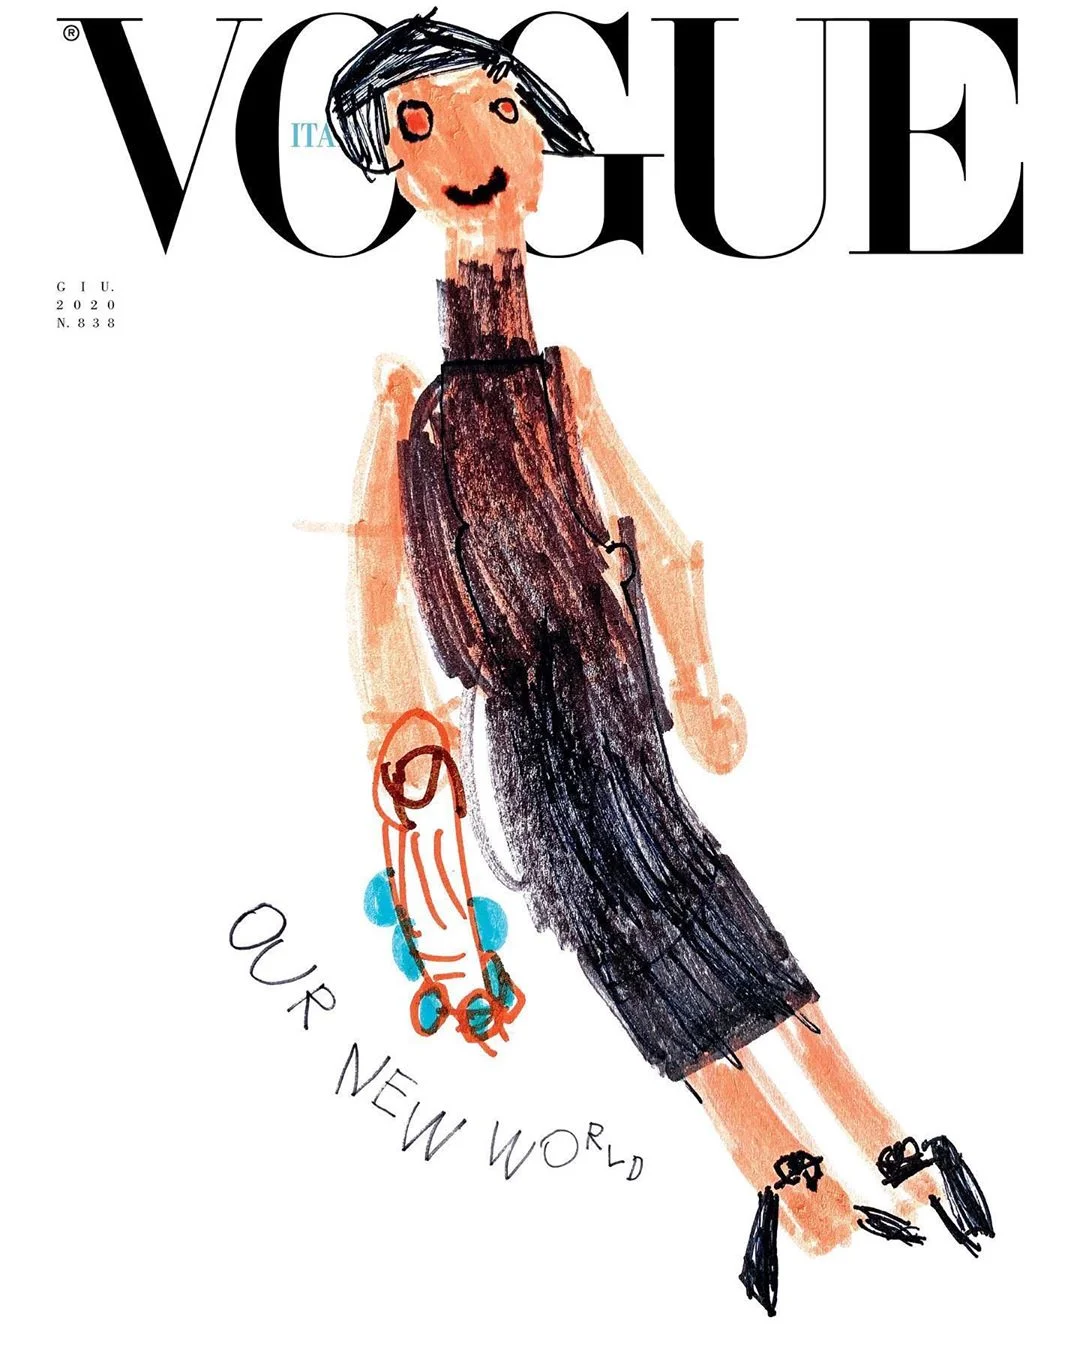 Впервые в истории обложку Vogue украсили детские рисунки - фото 480760